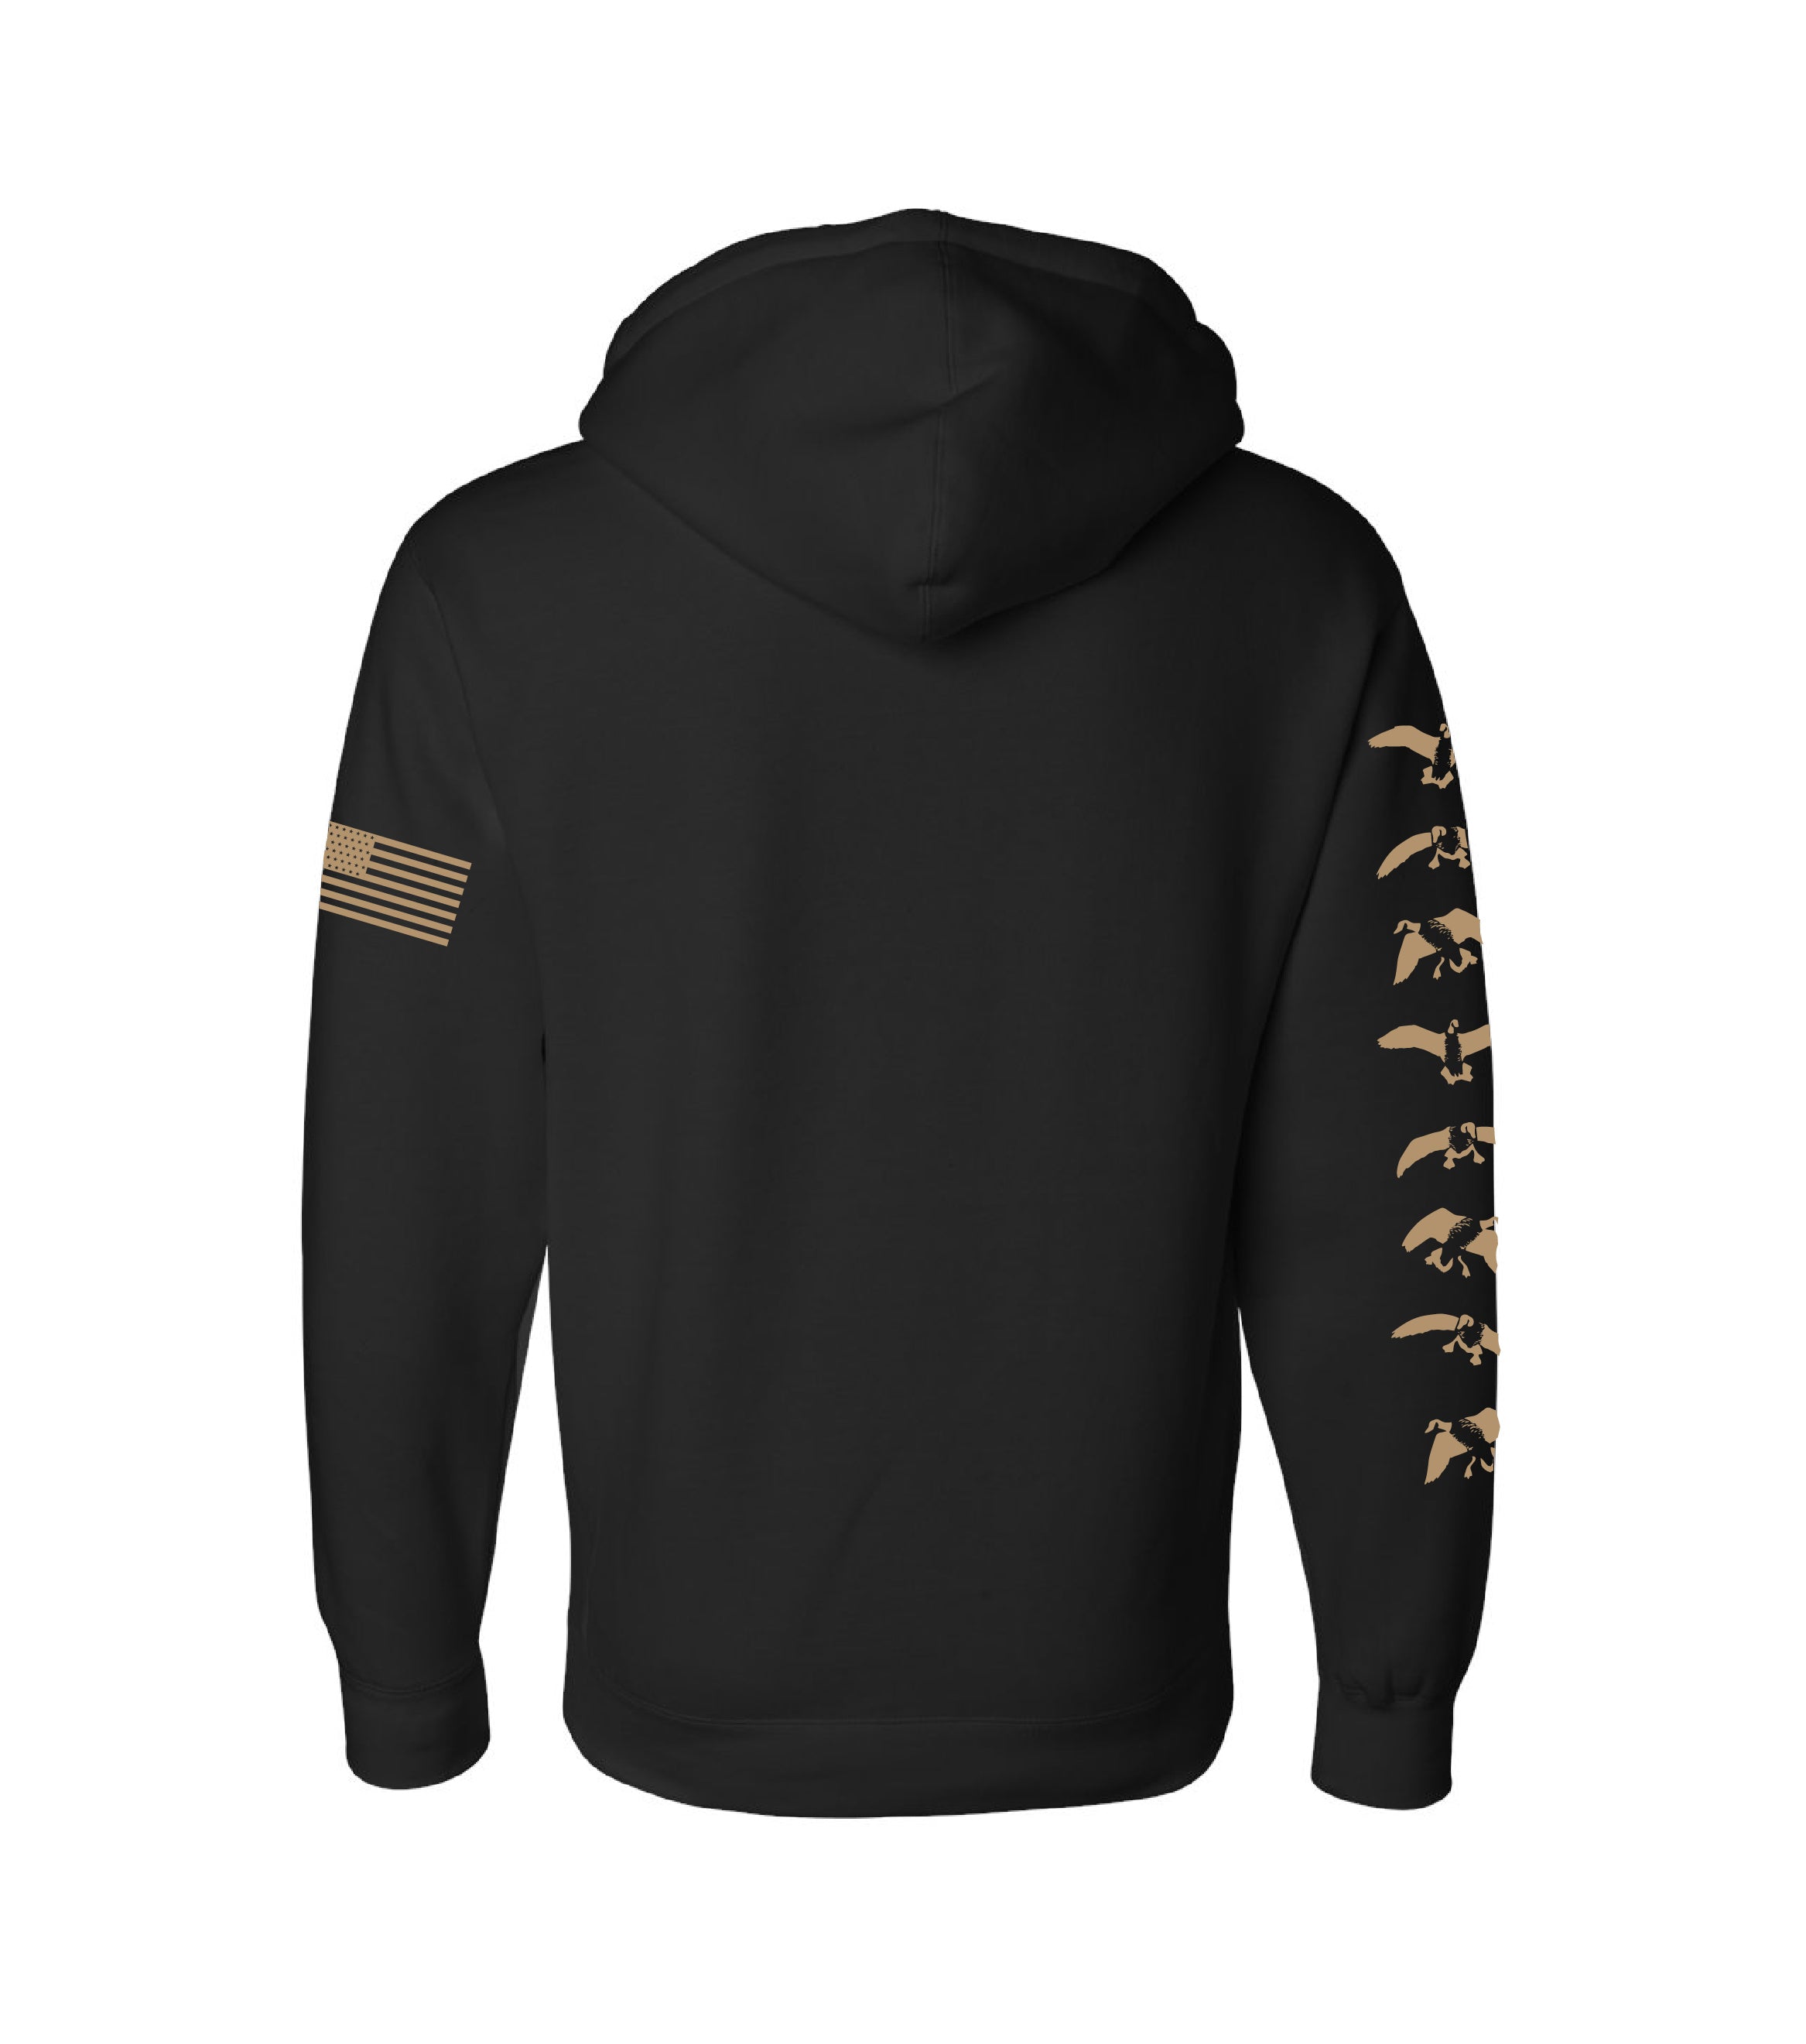 Honker Brigade Sweatshirt Black / Large